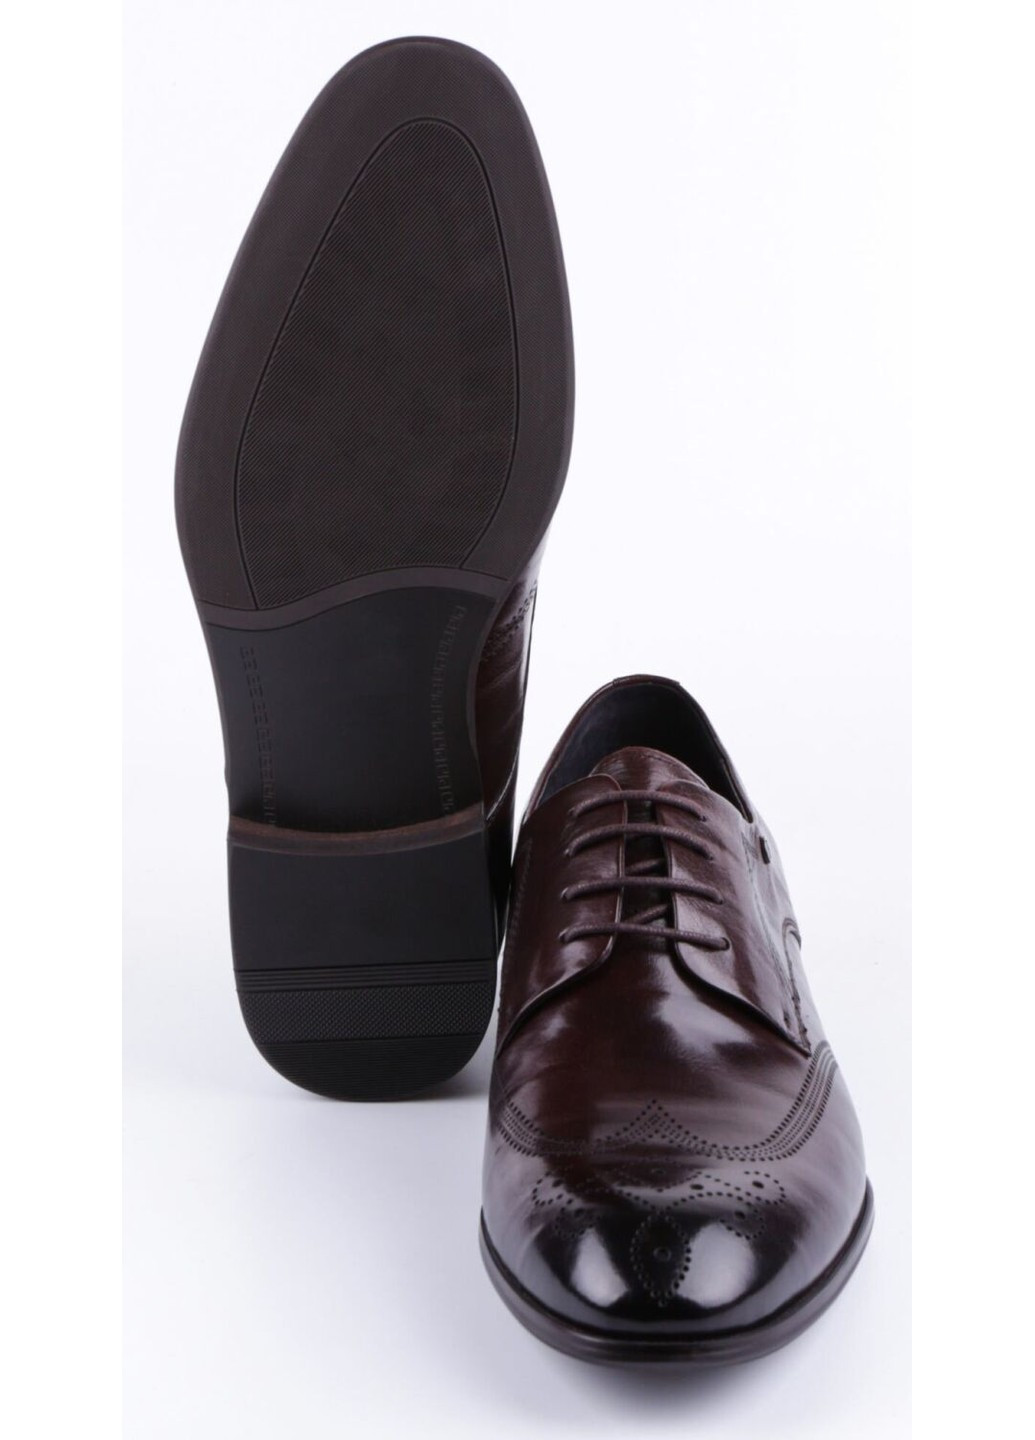 Бордовые мужские классические туфли 19776 Bazallini на шнурках